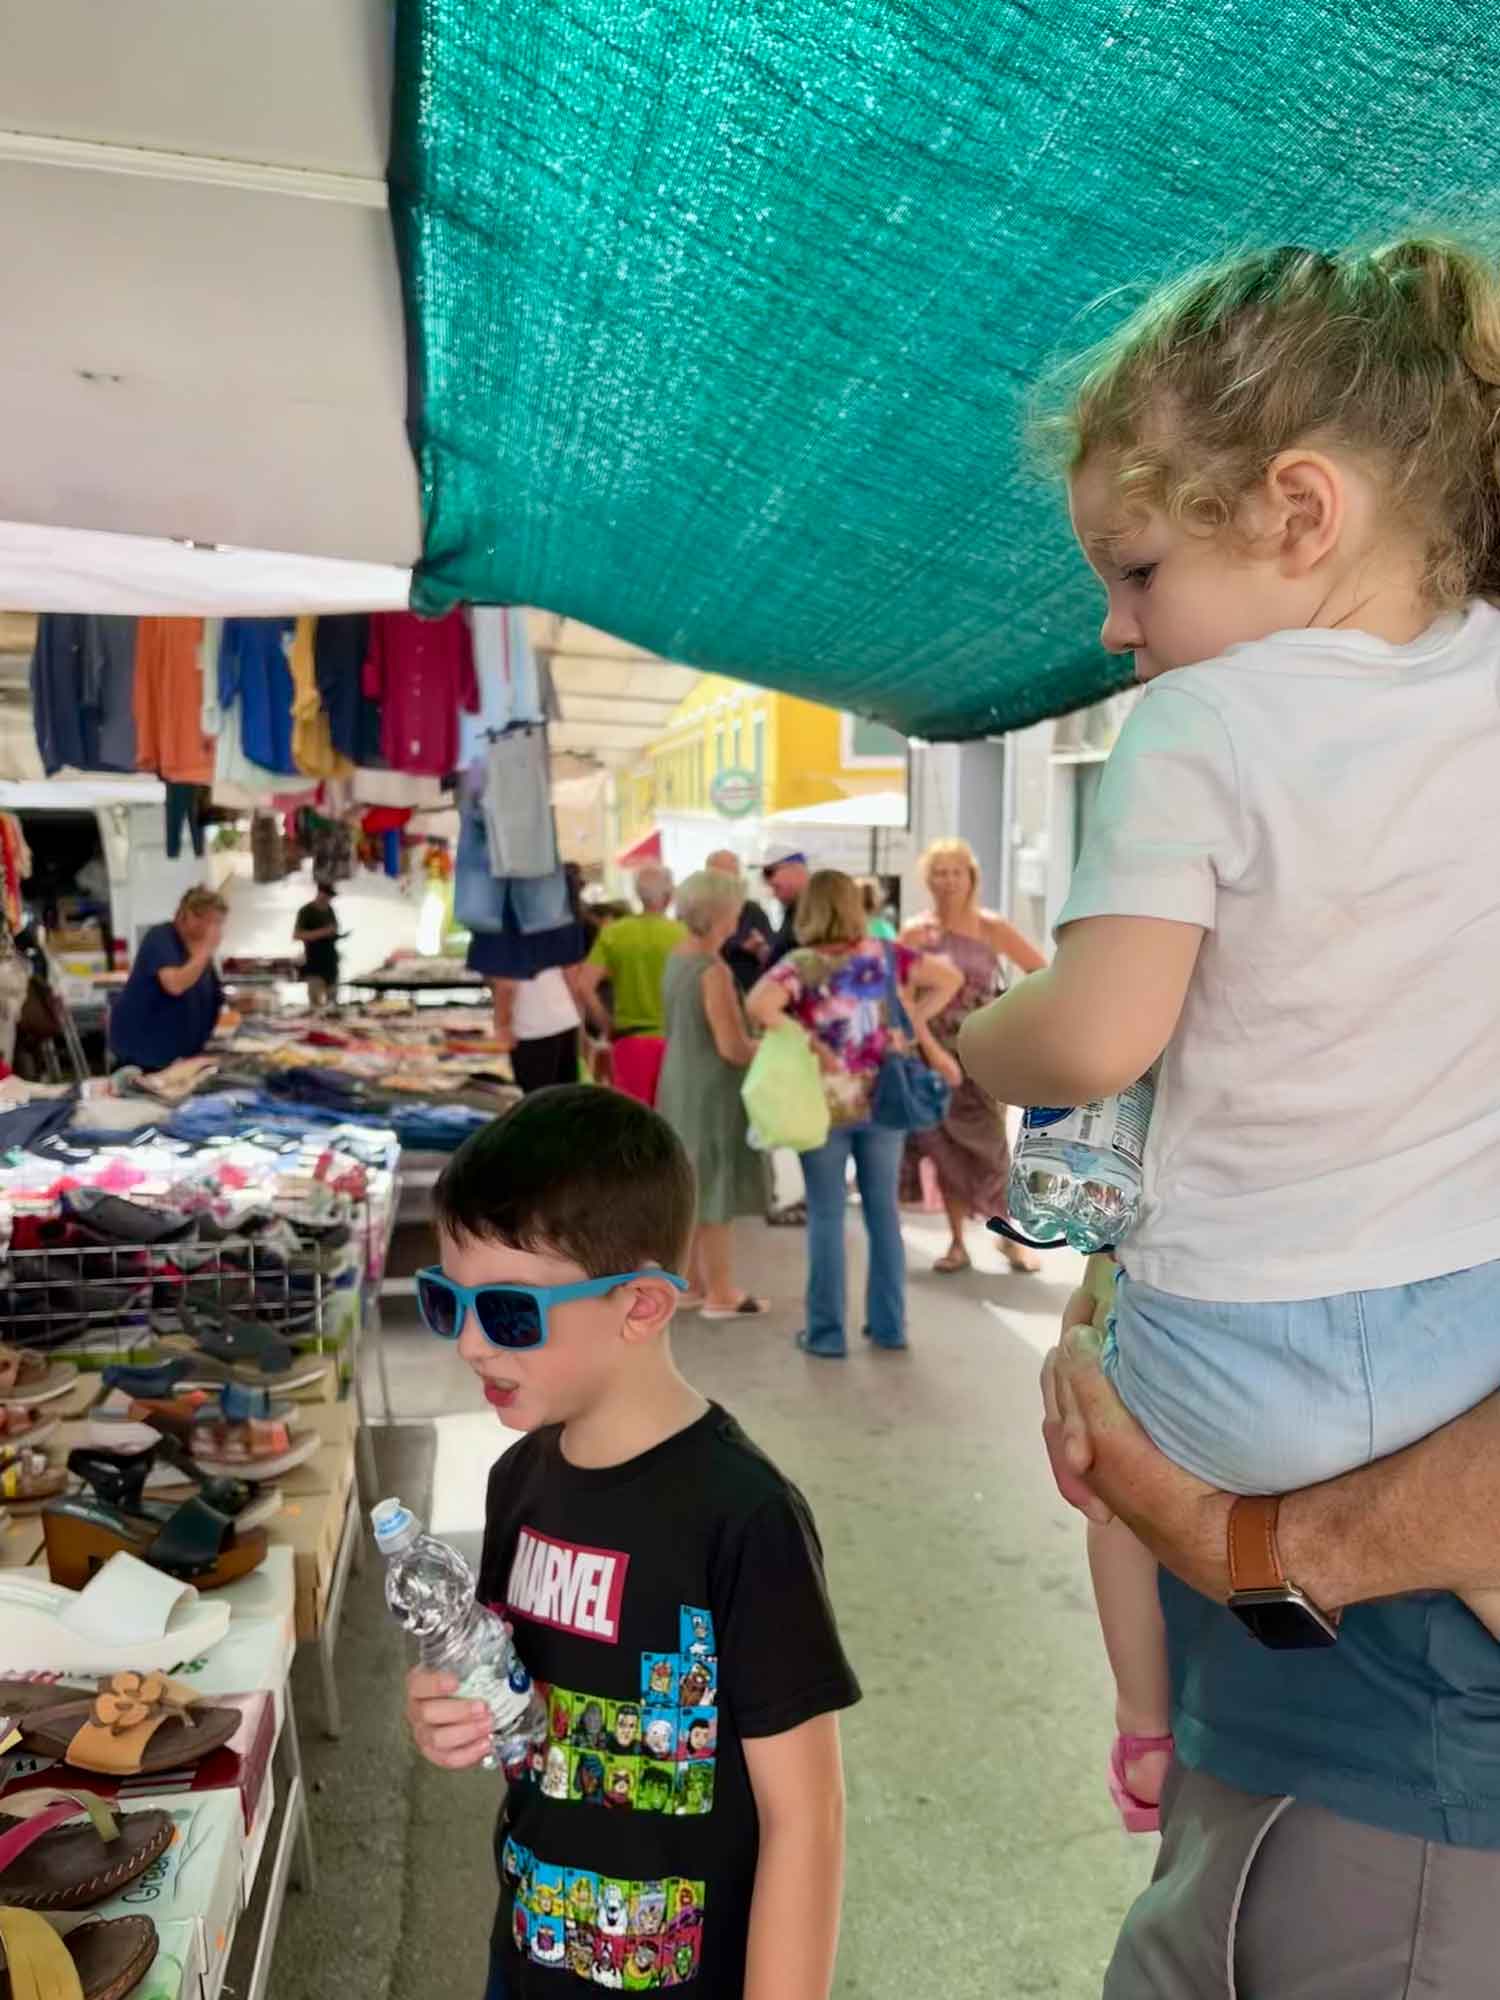 family looking at items at a market